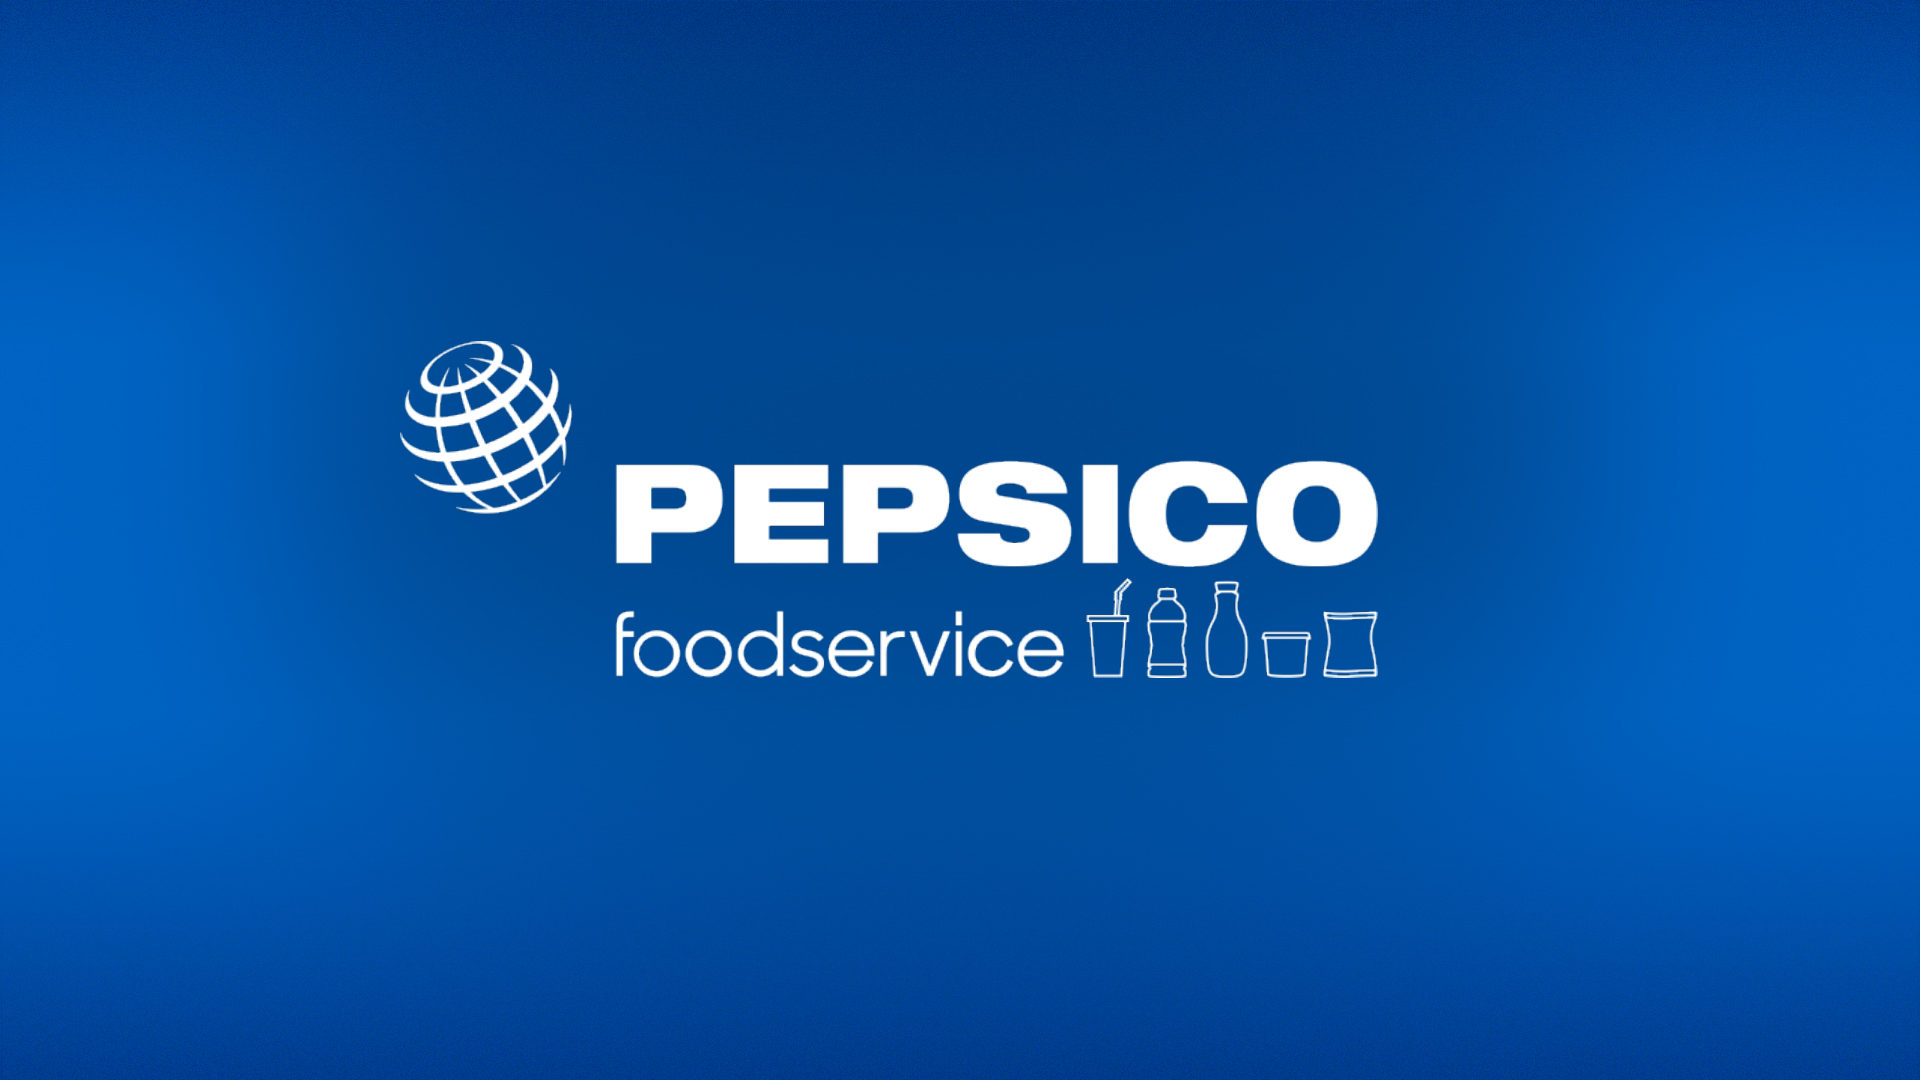 PepsiCo Foodservice Hero